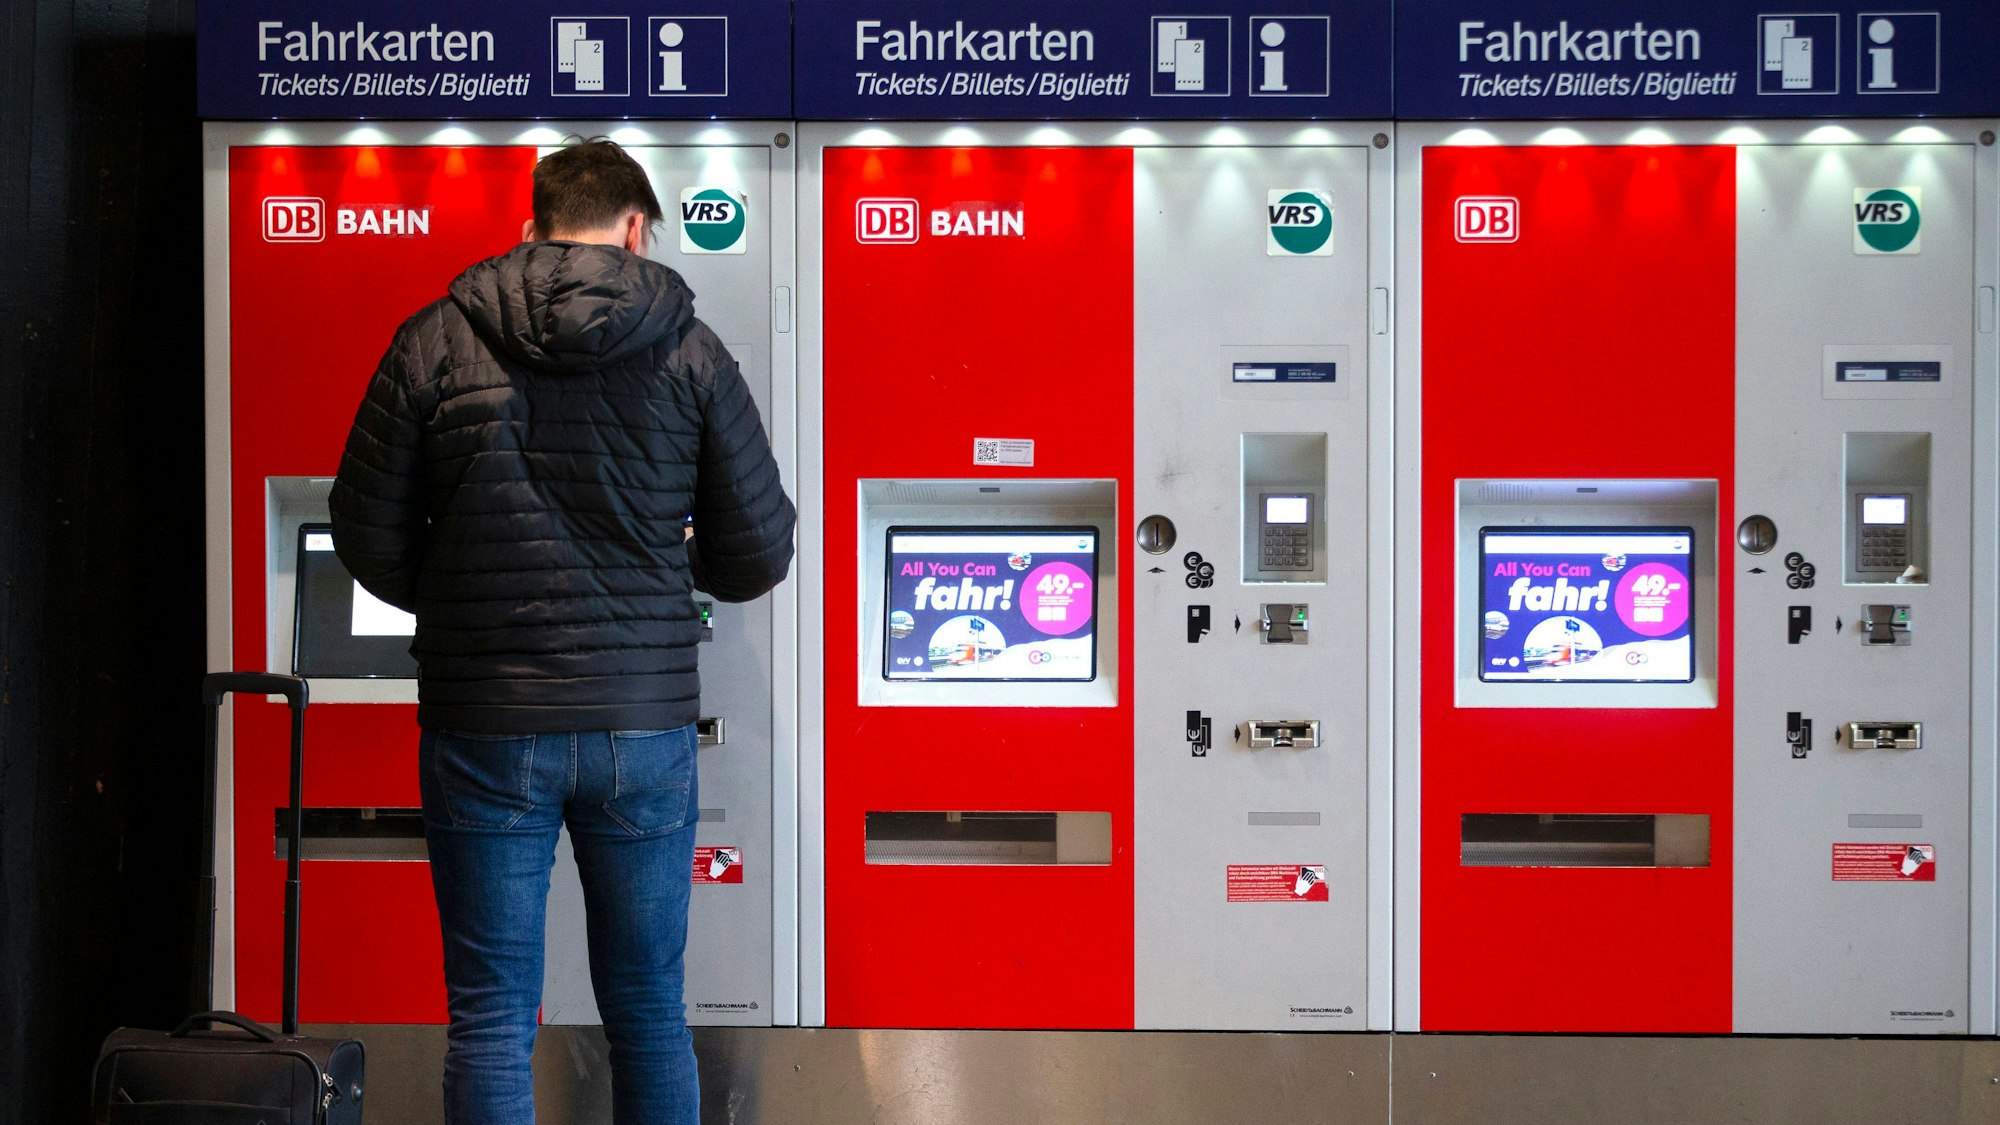 „All you can fahr! - 49 Euro Das Deutschlandticket“ steht auf den Monitoren von Fahrkartenautomaten im Kölner Hauptbahnhof.